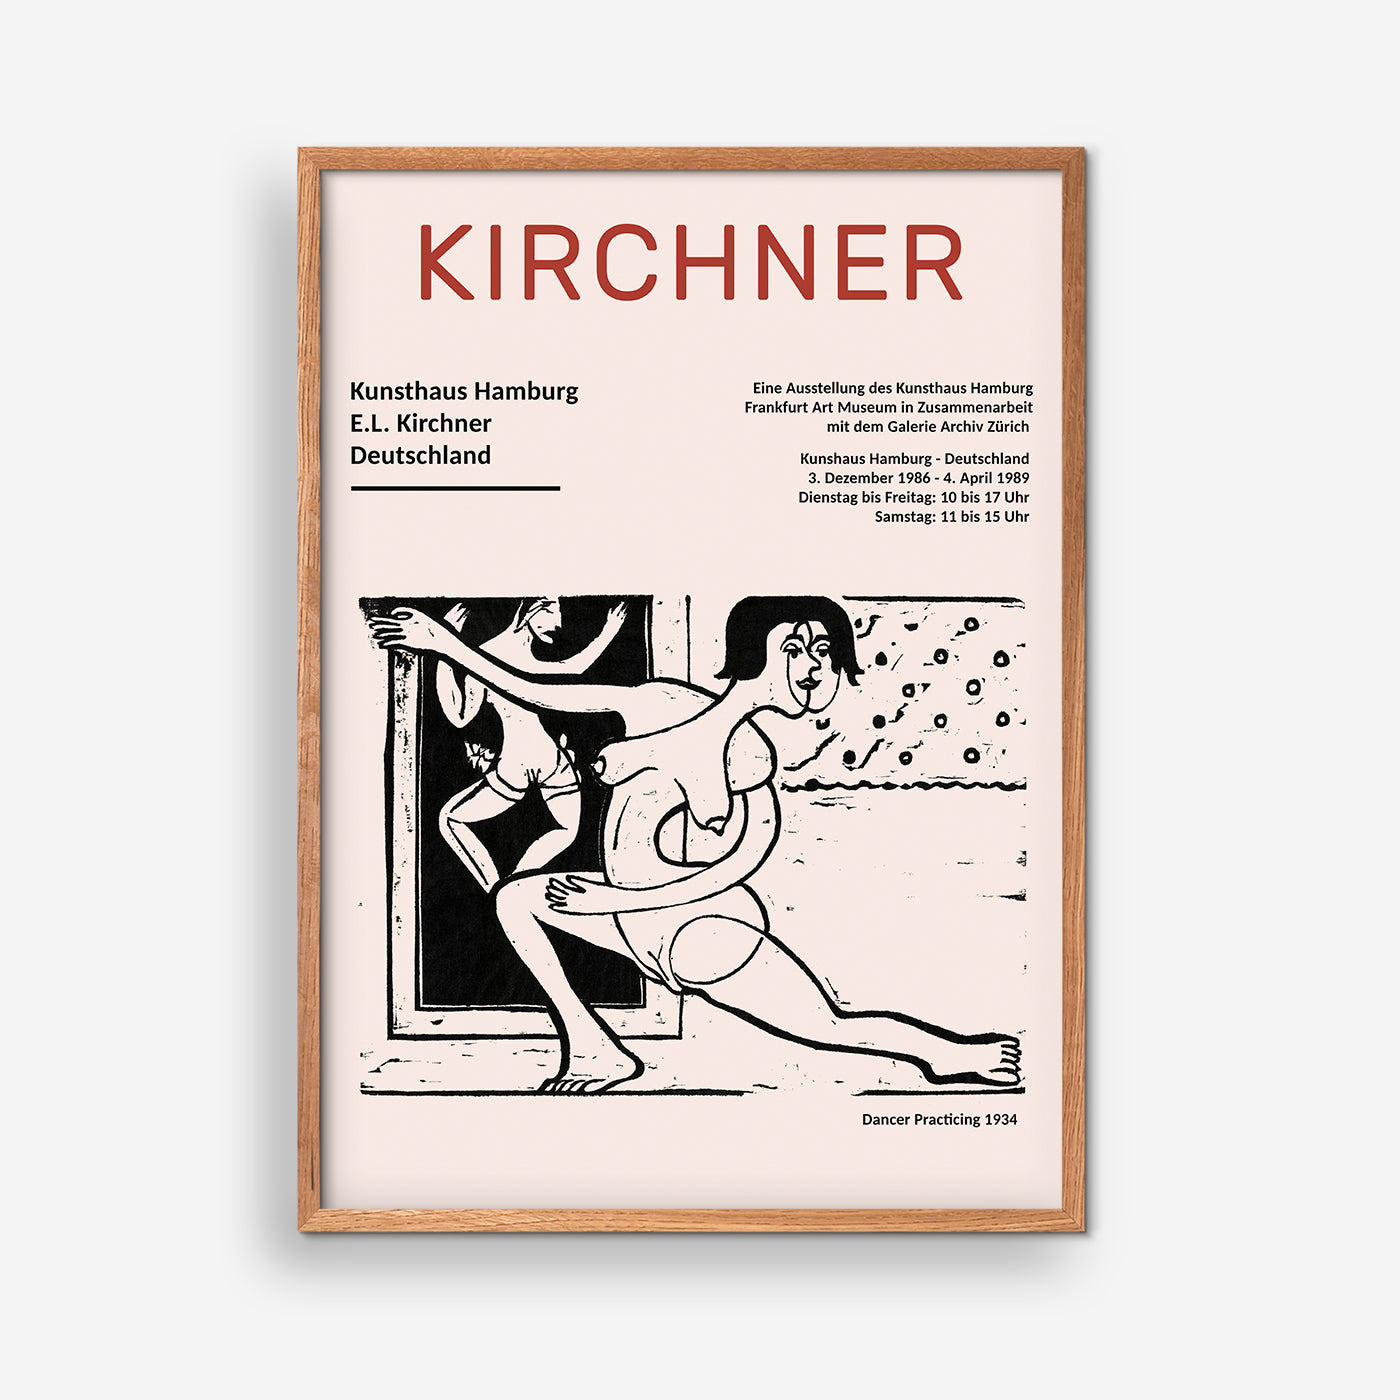 Dansare praktiserar 1934 - Ernst Ludwig Kirchner